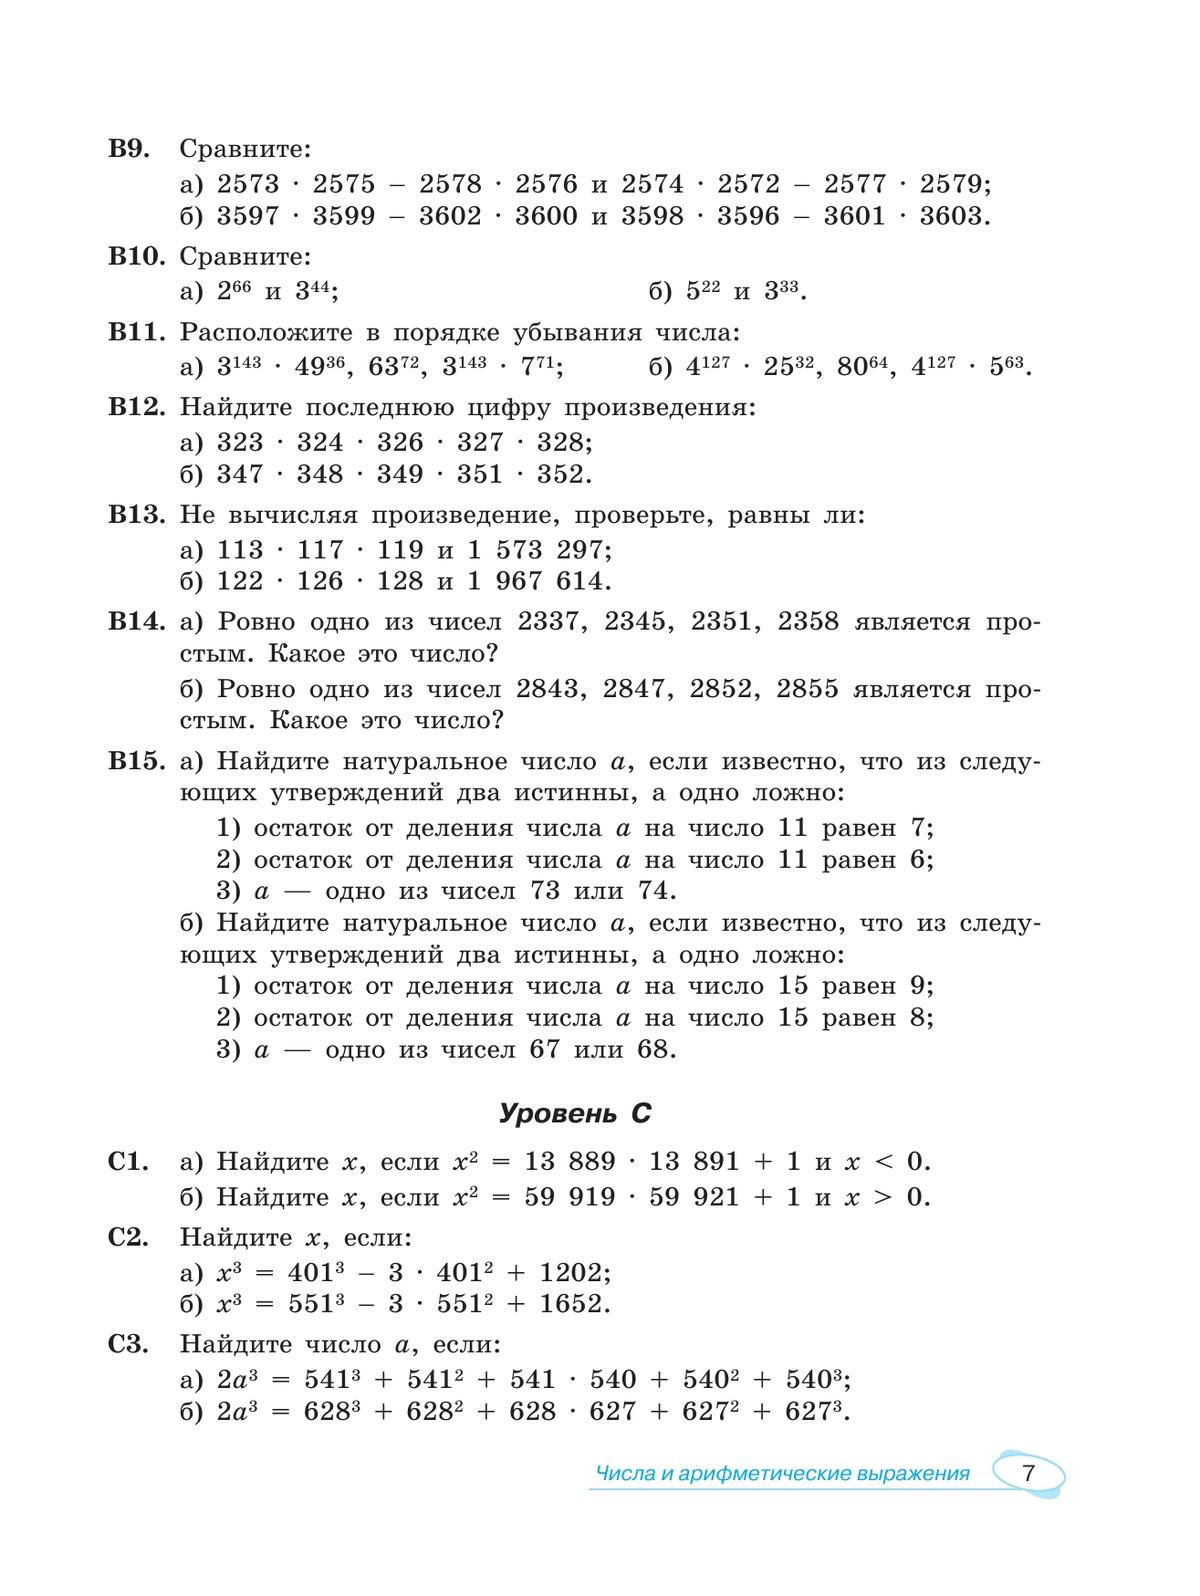 Математика. Универсальный многоуровневый сборник задач. 7-9 класс. В 3 частях. Часть 1 Алгебра 6